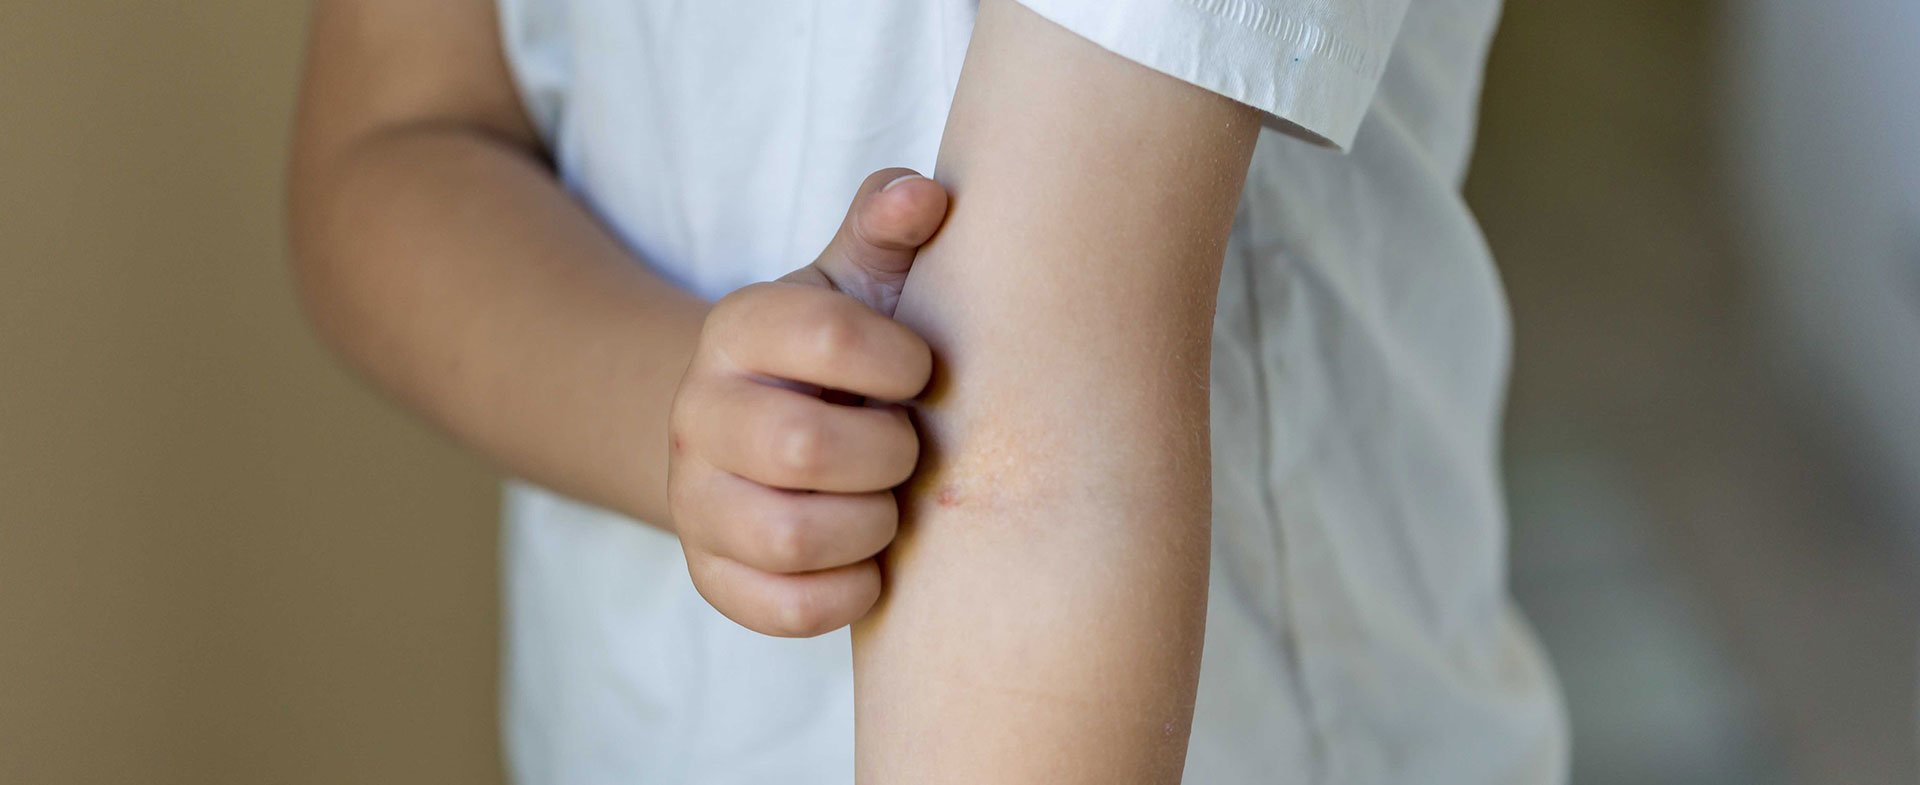 child itching eczema